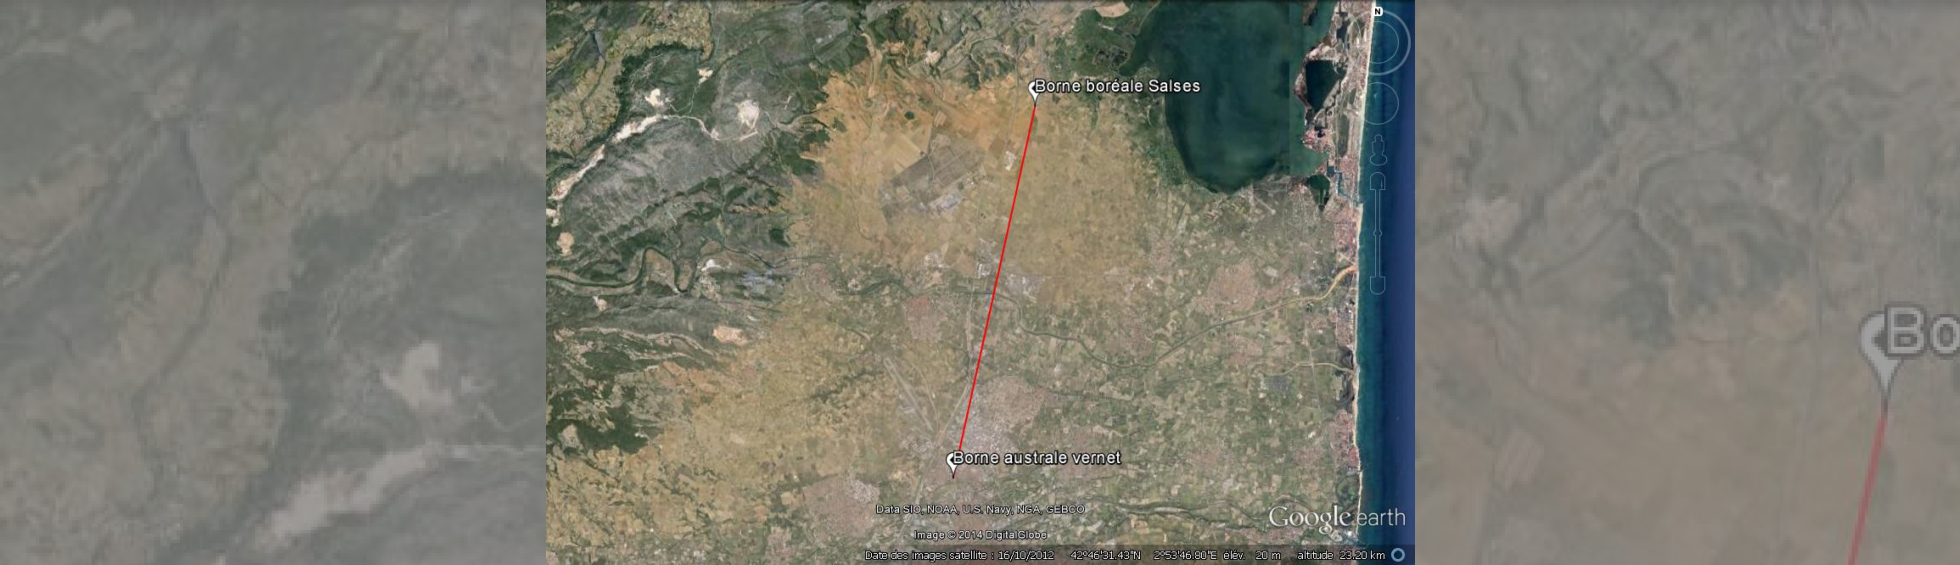 Vue aérienne représentant la ligne de mesure de distance entre les bornes de Perpignan et Salses